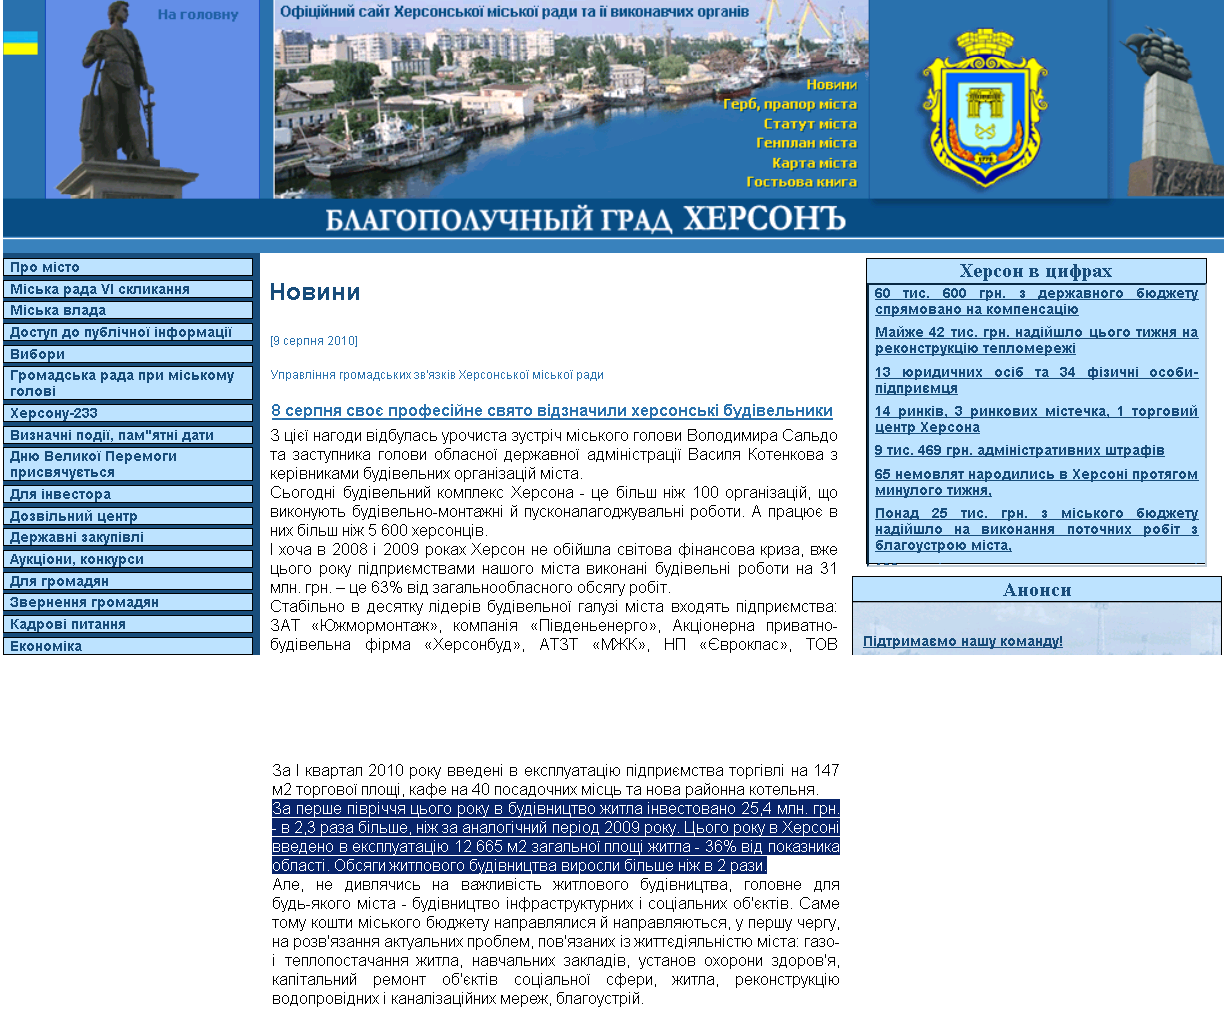 http://www.city.kherson.ua/index.php?id=5818&clear_menu=true